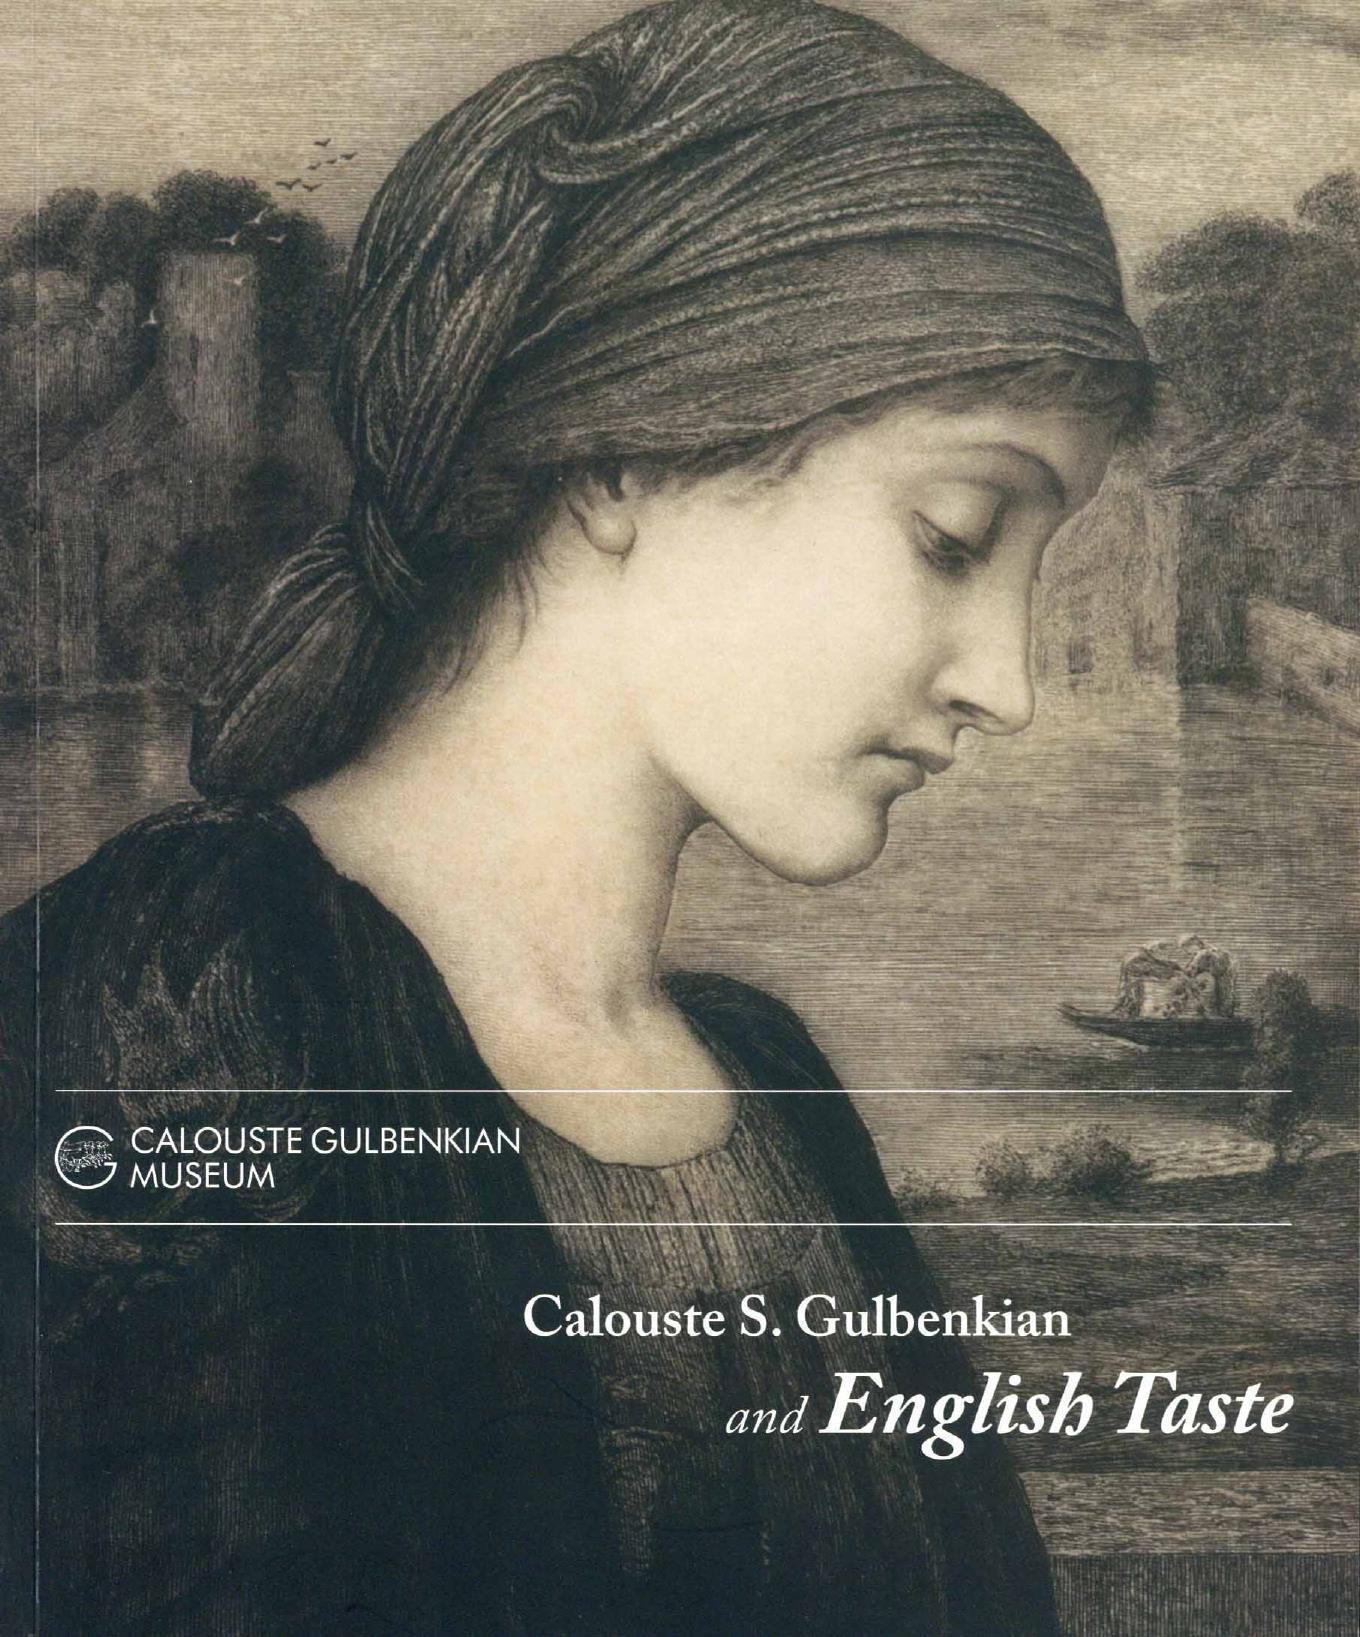 Calouste S. Gulbenkian and the English Taste